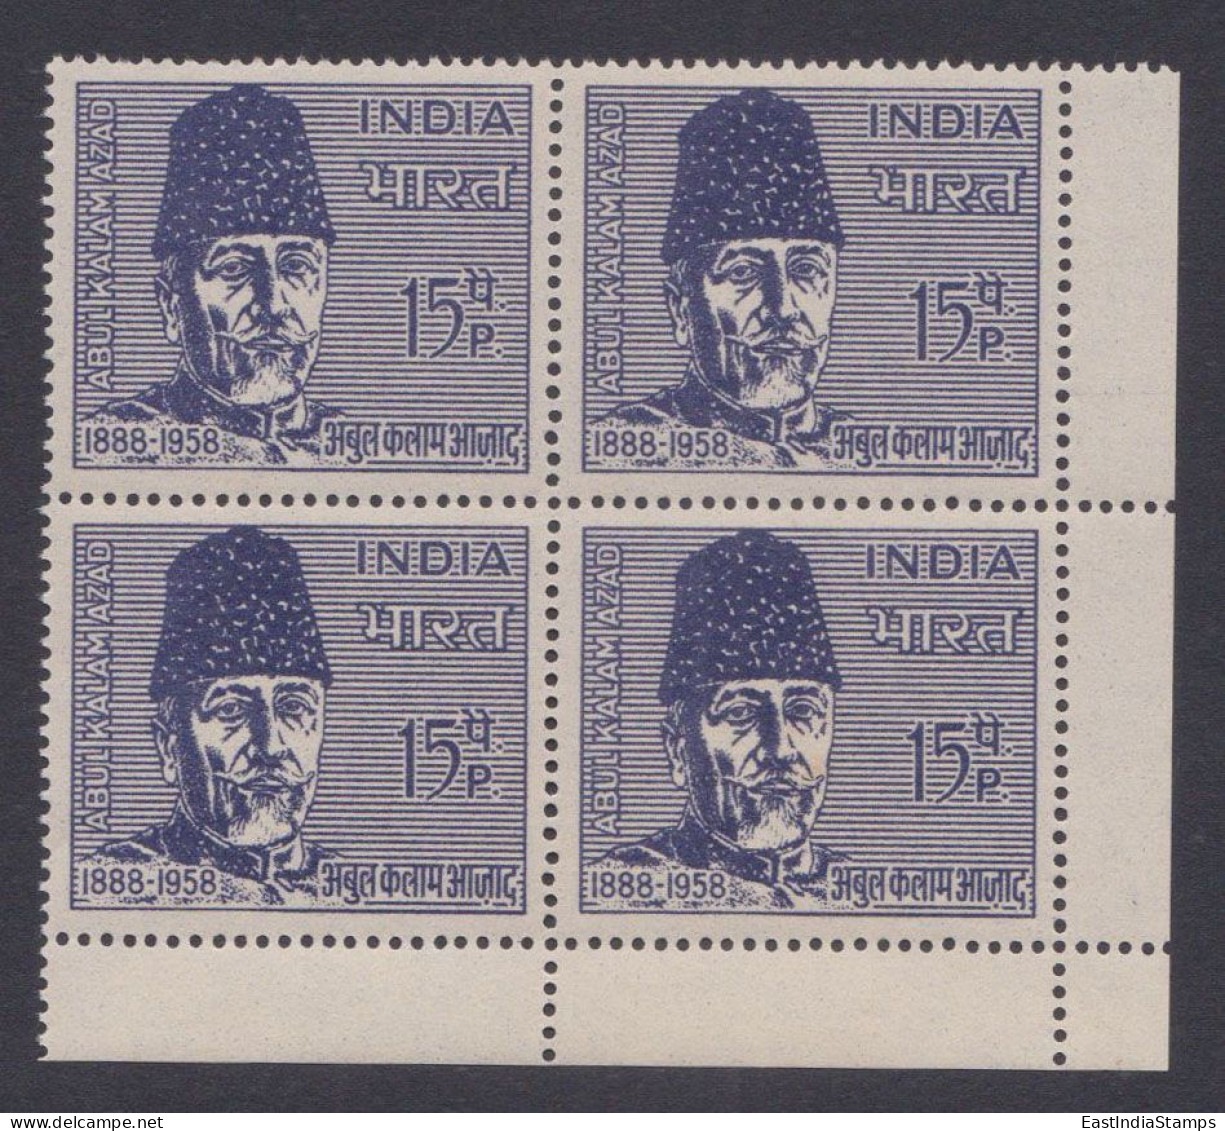 Inde India 1966 MNH Maulana Abul Kalam Azad, Indian Independence Leader, Muslim Politician, Writer, Congress, Block - Nuevos